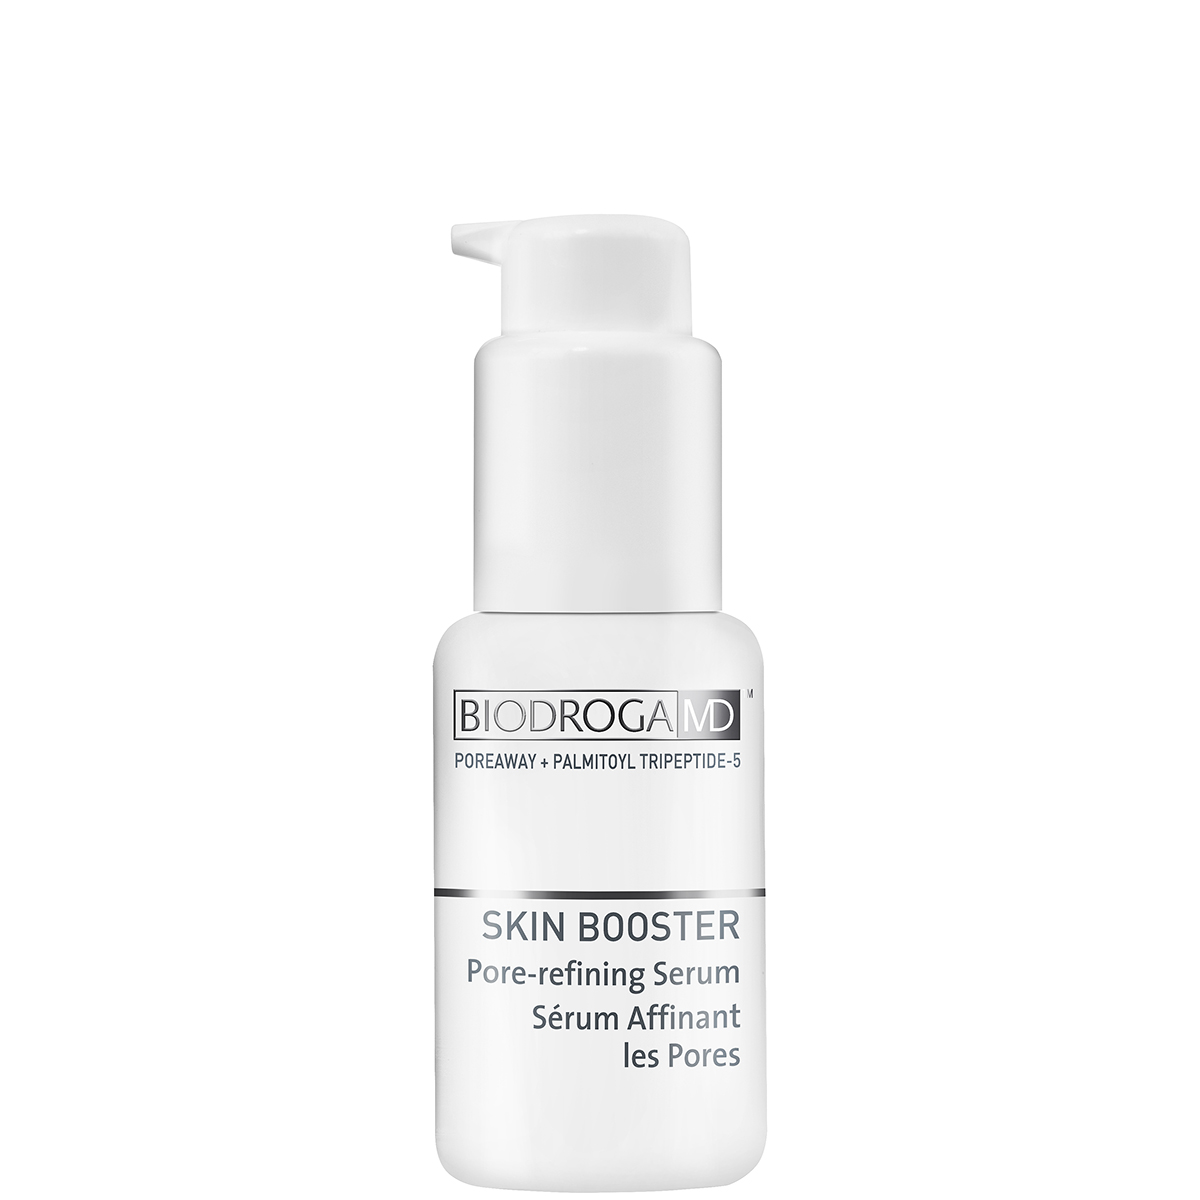 Biodroga Md Skin Booster Pore-Refining Serum